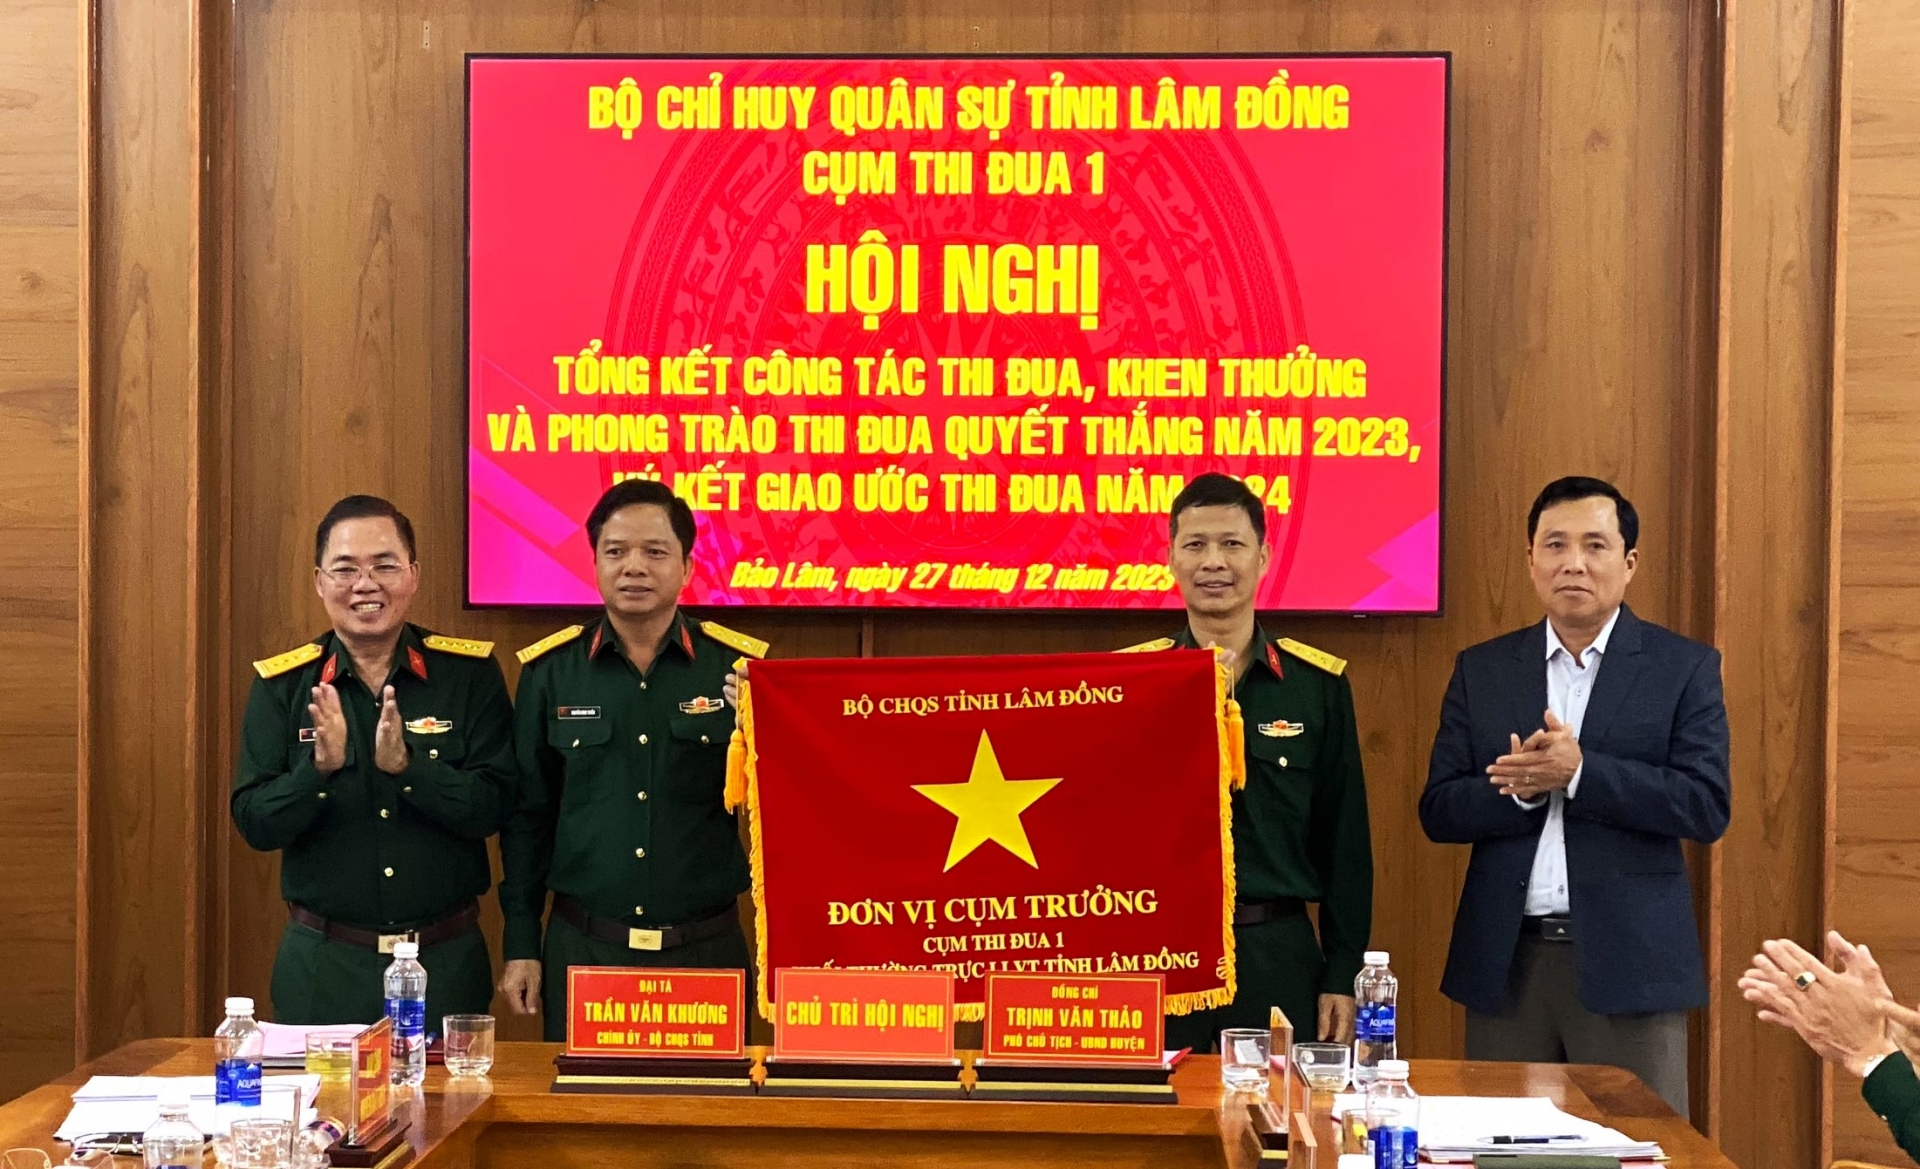 Ban Chỉ huy Quân sự huyện Bảo Lâm nhận cờ Cụm trưởng năm 2024 từ Ban Chỉ huy Quân sự huyện Cát Tiên - Cụm trưởng năm 2023